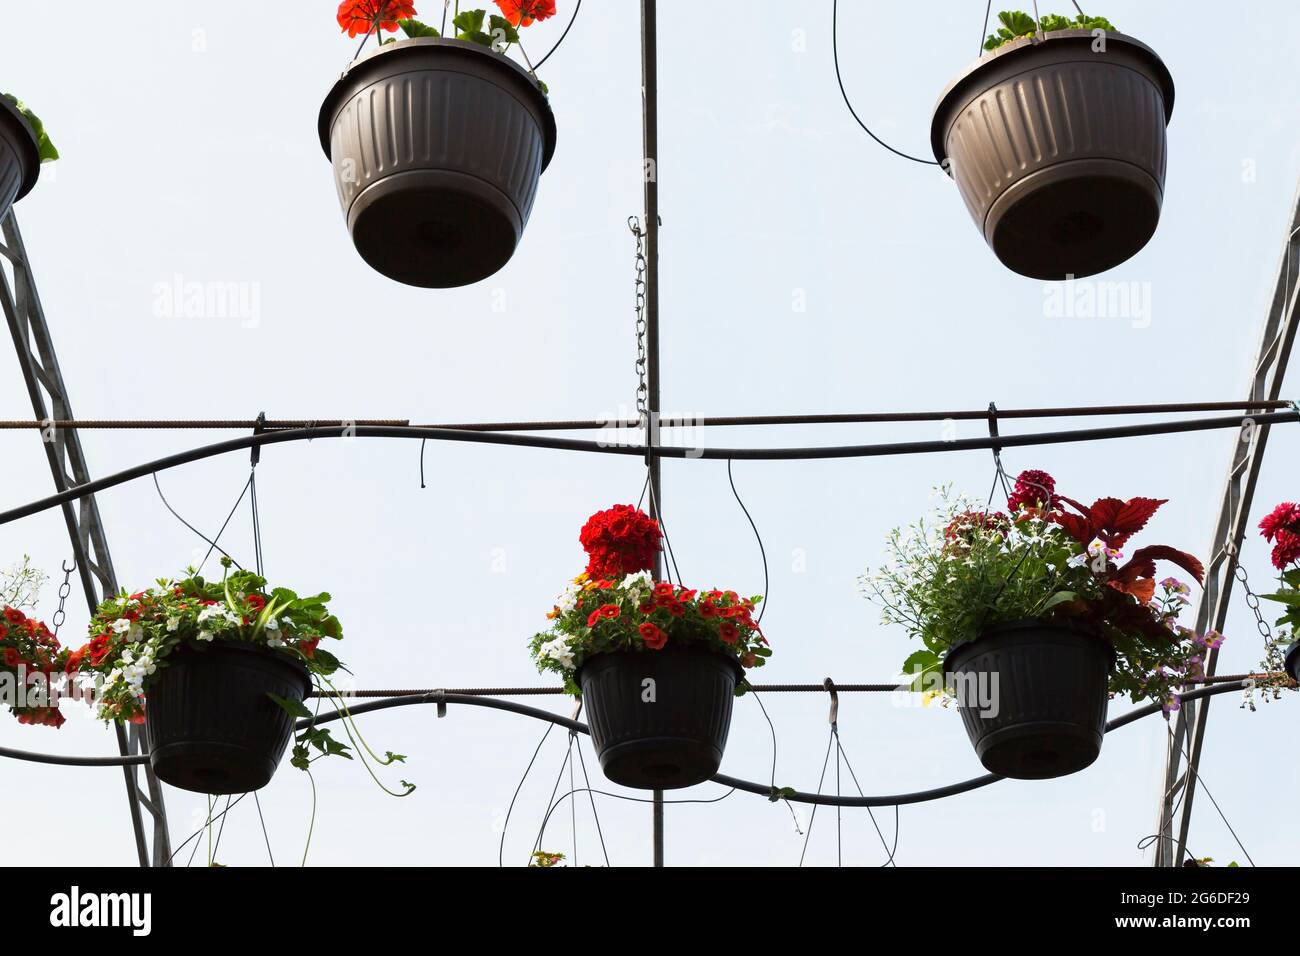 Plantes et fleurs annuelles mixtes croissant dans des paniers suspendus à des tiges métalliques de la structure de toit à l'intérieur d'une serre. Banque D'Images